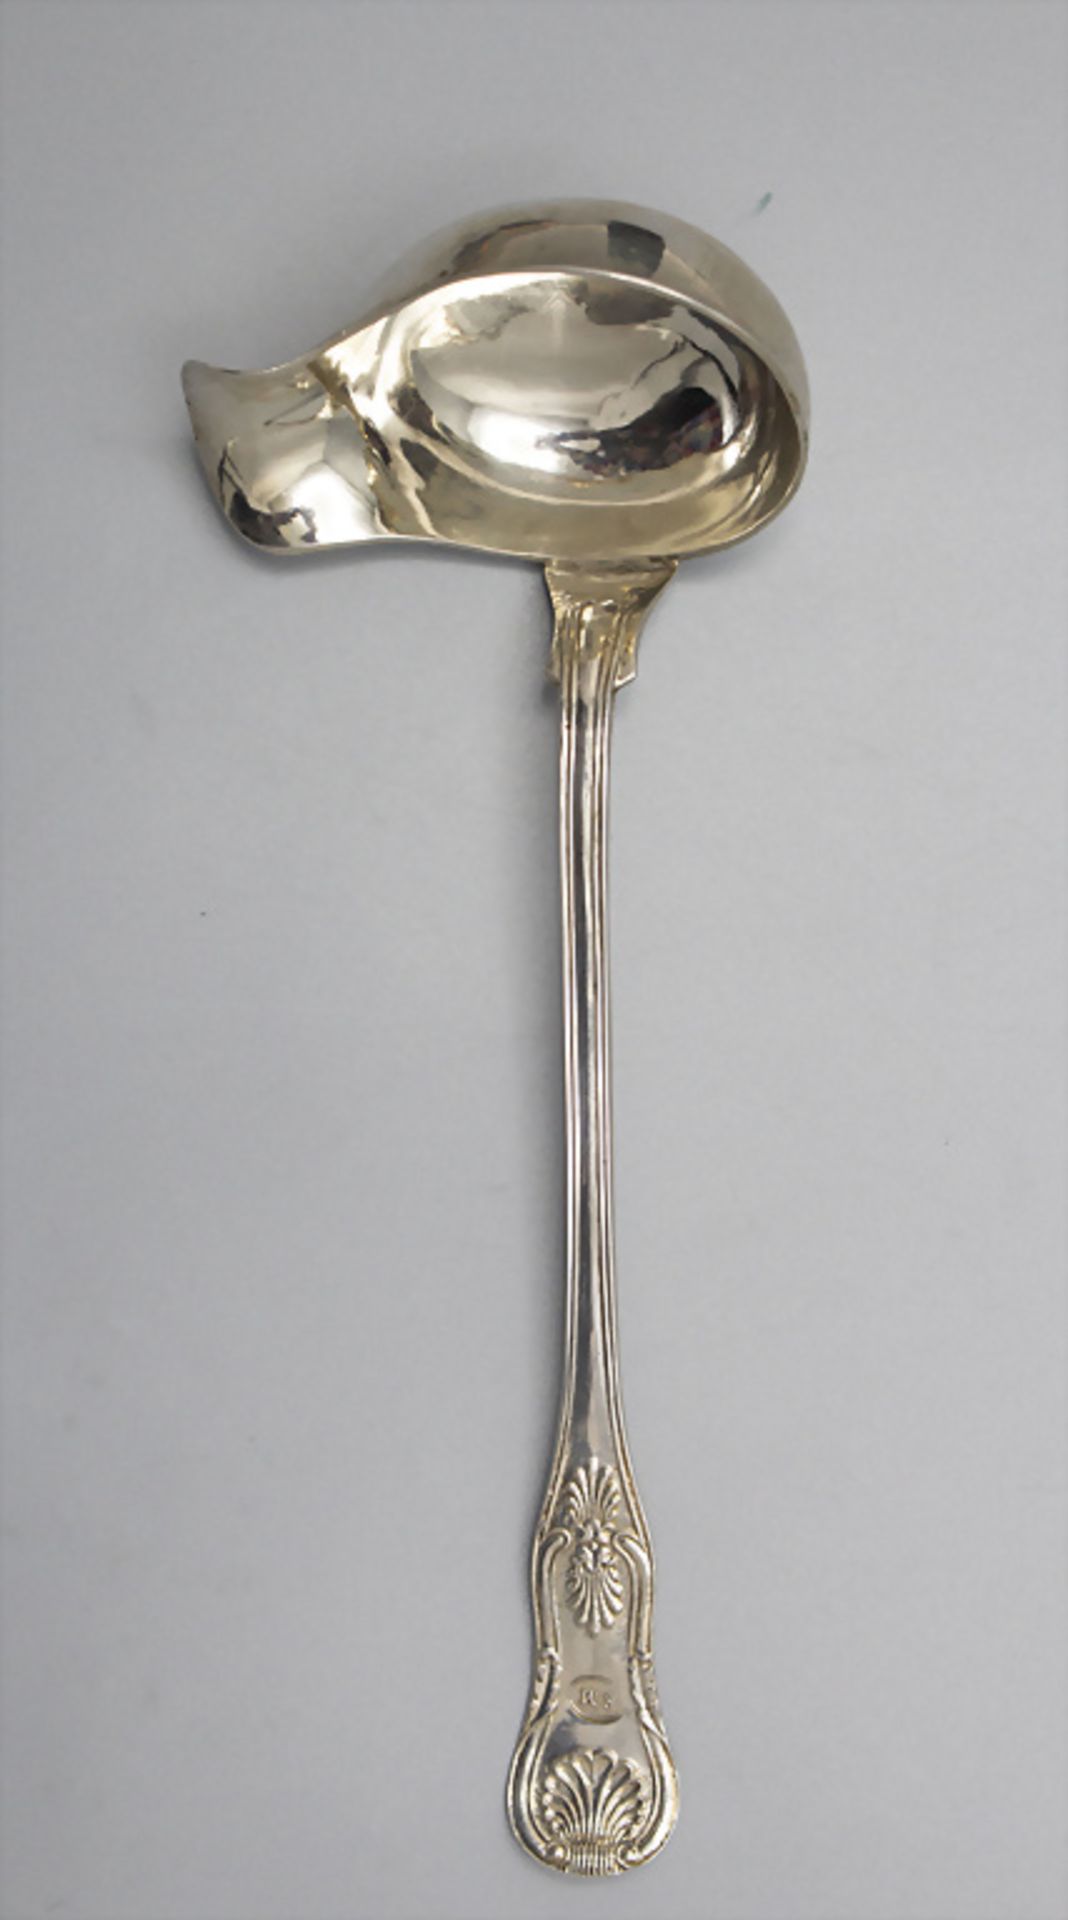 Saucenkelle / A silver sauce ladle, Schweden, 1863